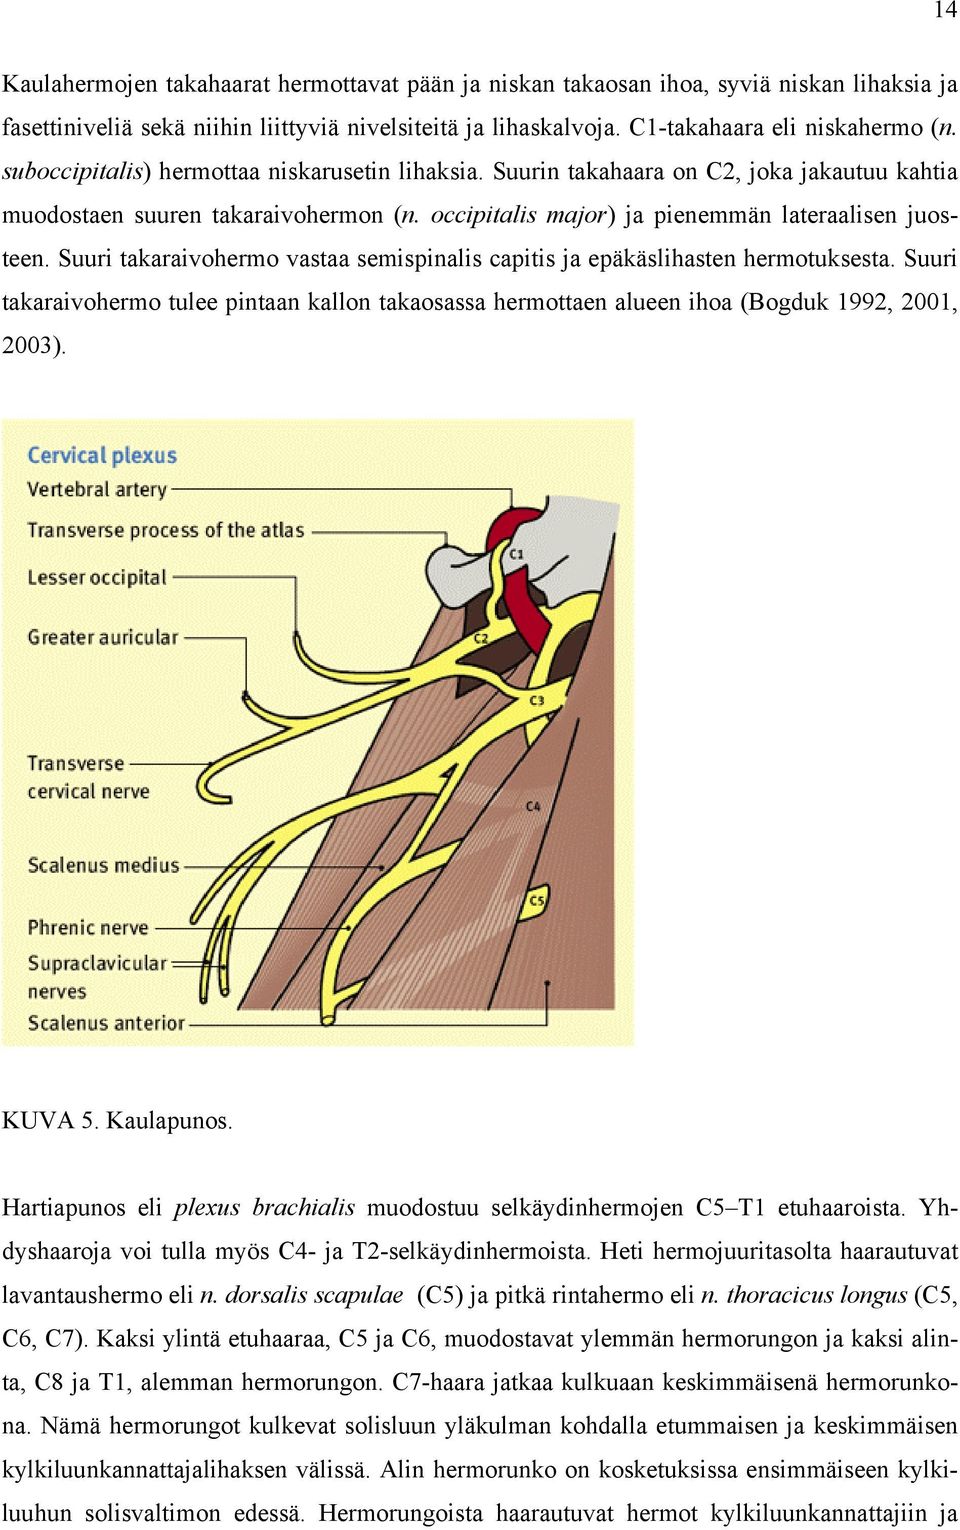 Suuri takaraivohermo vastaa semispinalis capitis ja epäkäslihasten hermotuksesta. Suuri takaraivohermo tulee pintaan kallon takaosassa hermottaen alueen ihoa (Bogduk 1992, 2001, 2003). KUVA 5.